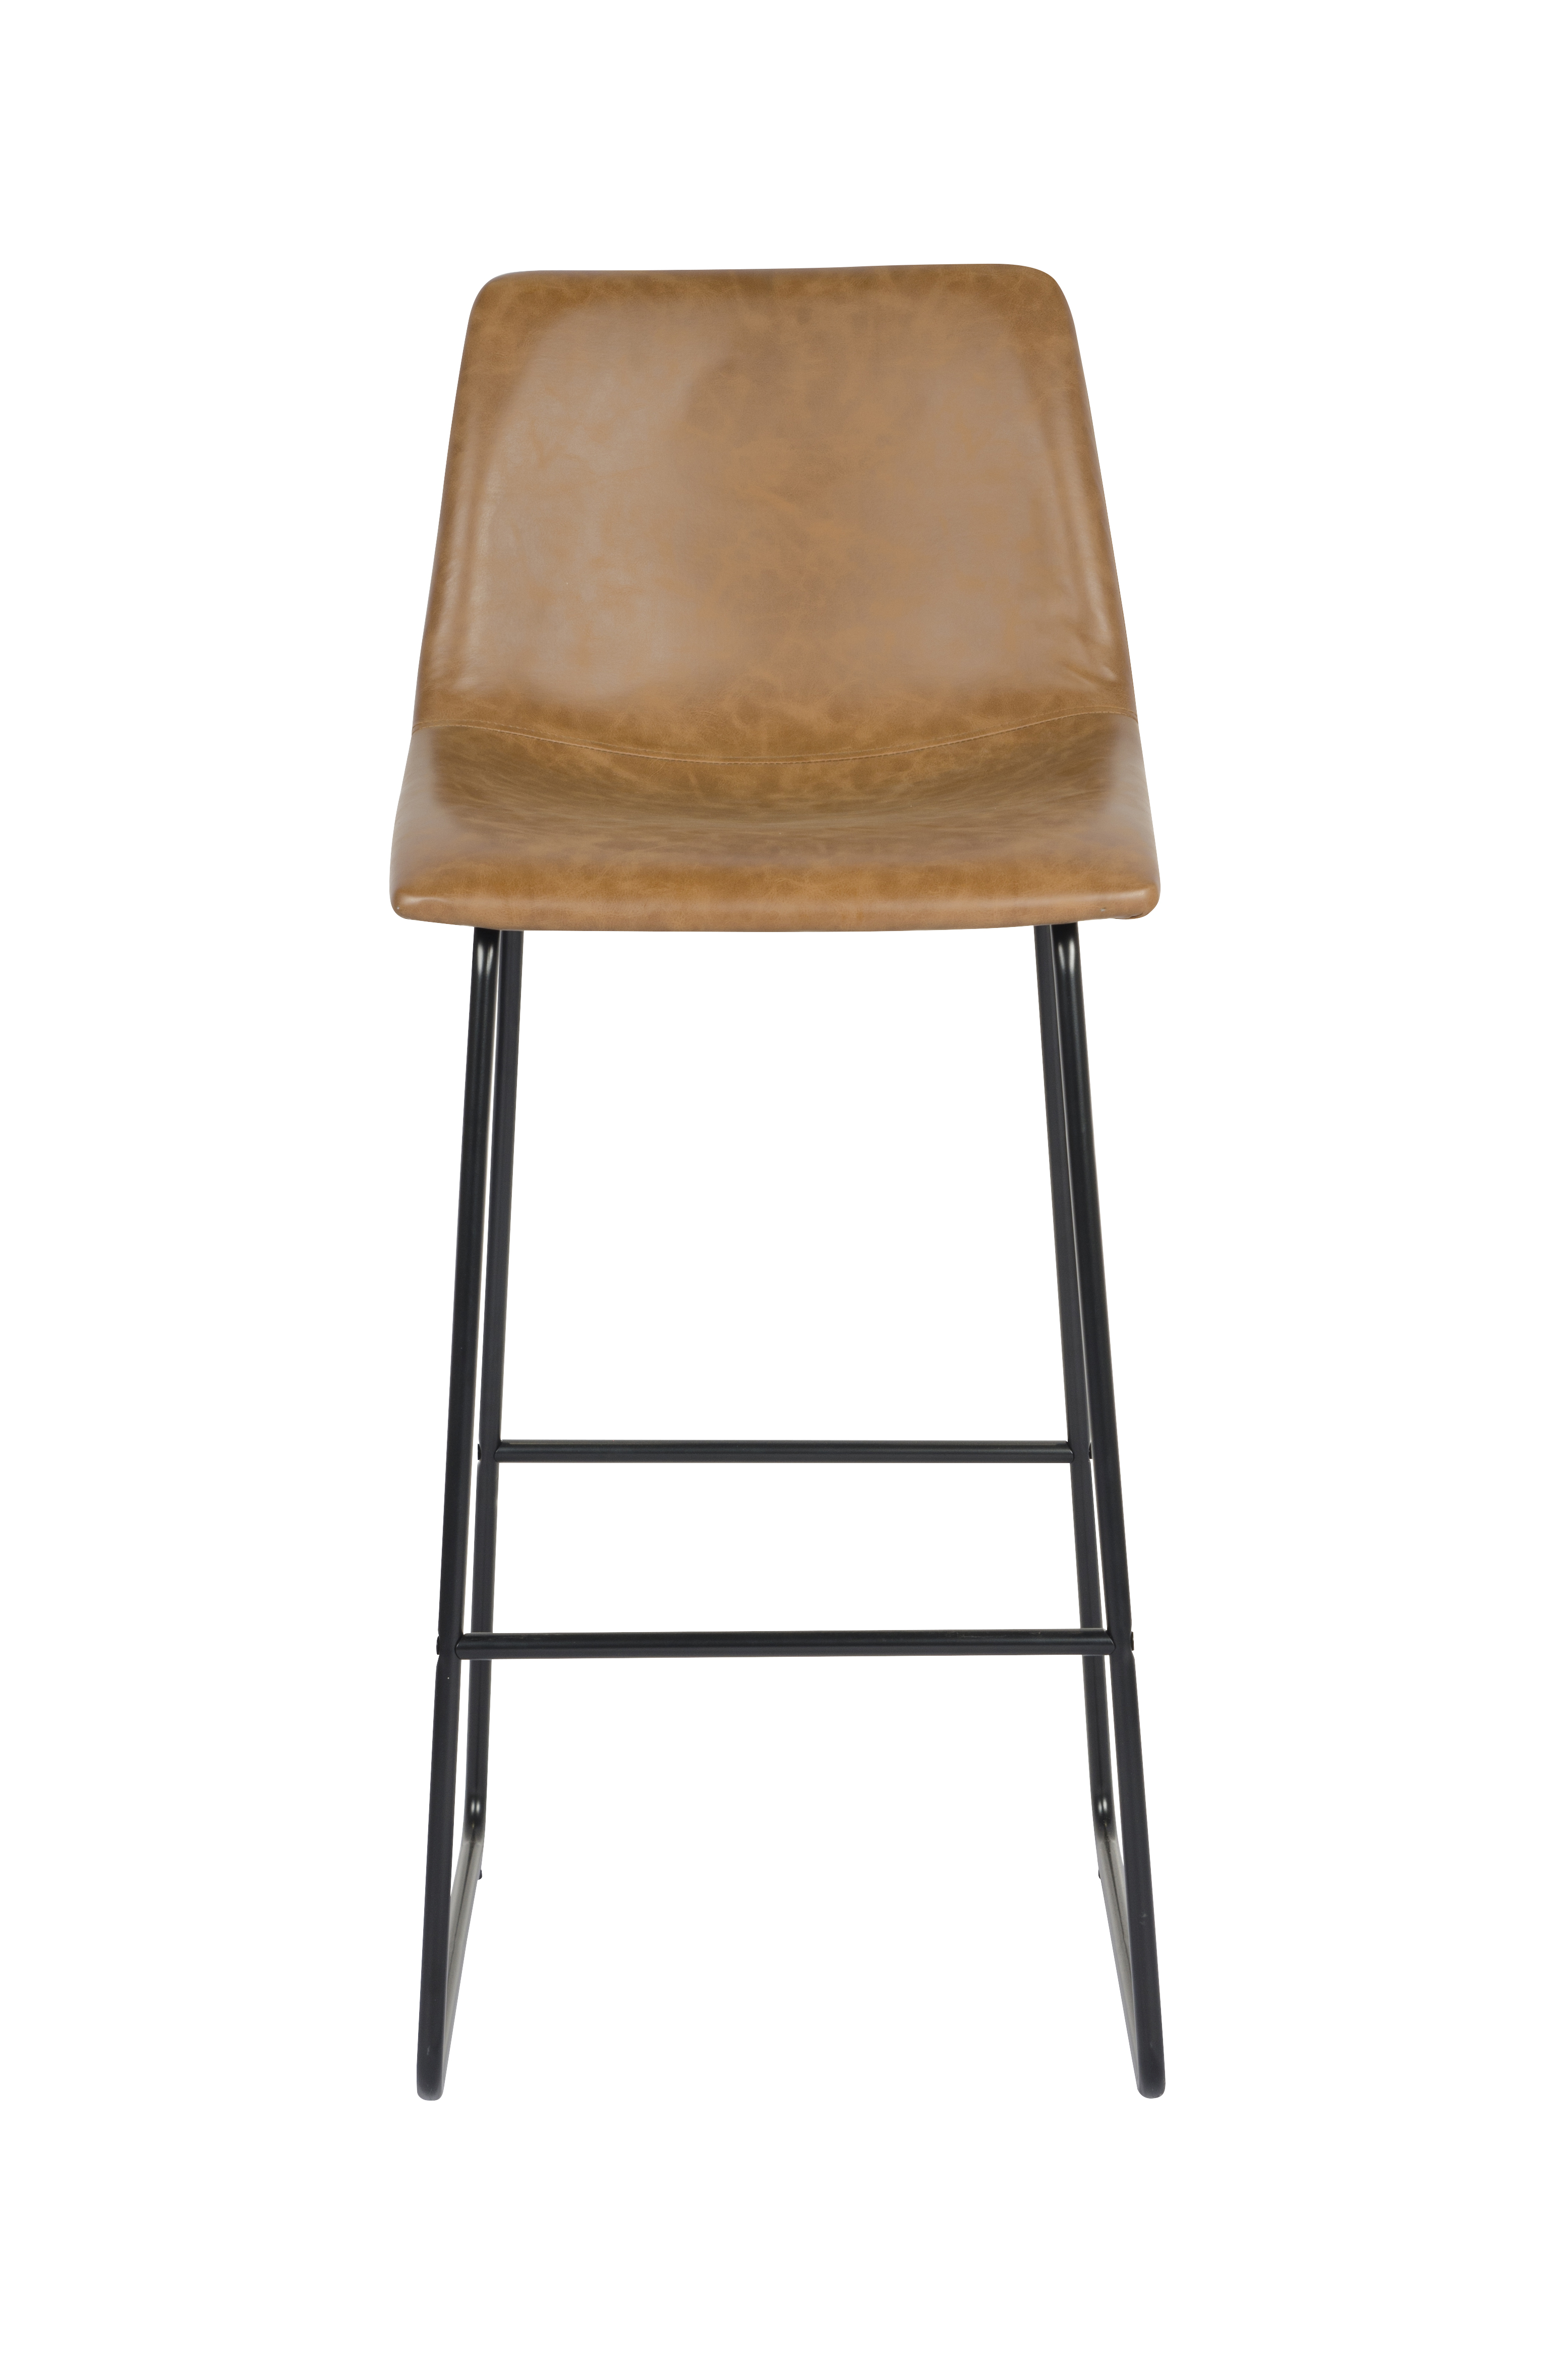 Bar chair, Iron chair, Modern simple bar chair, High  chair